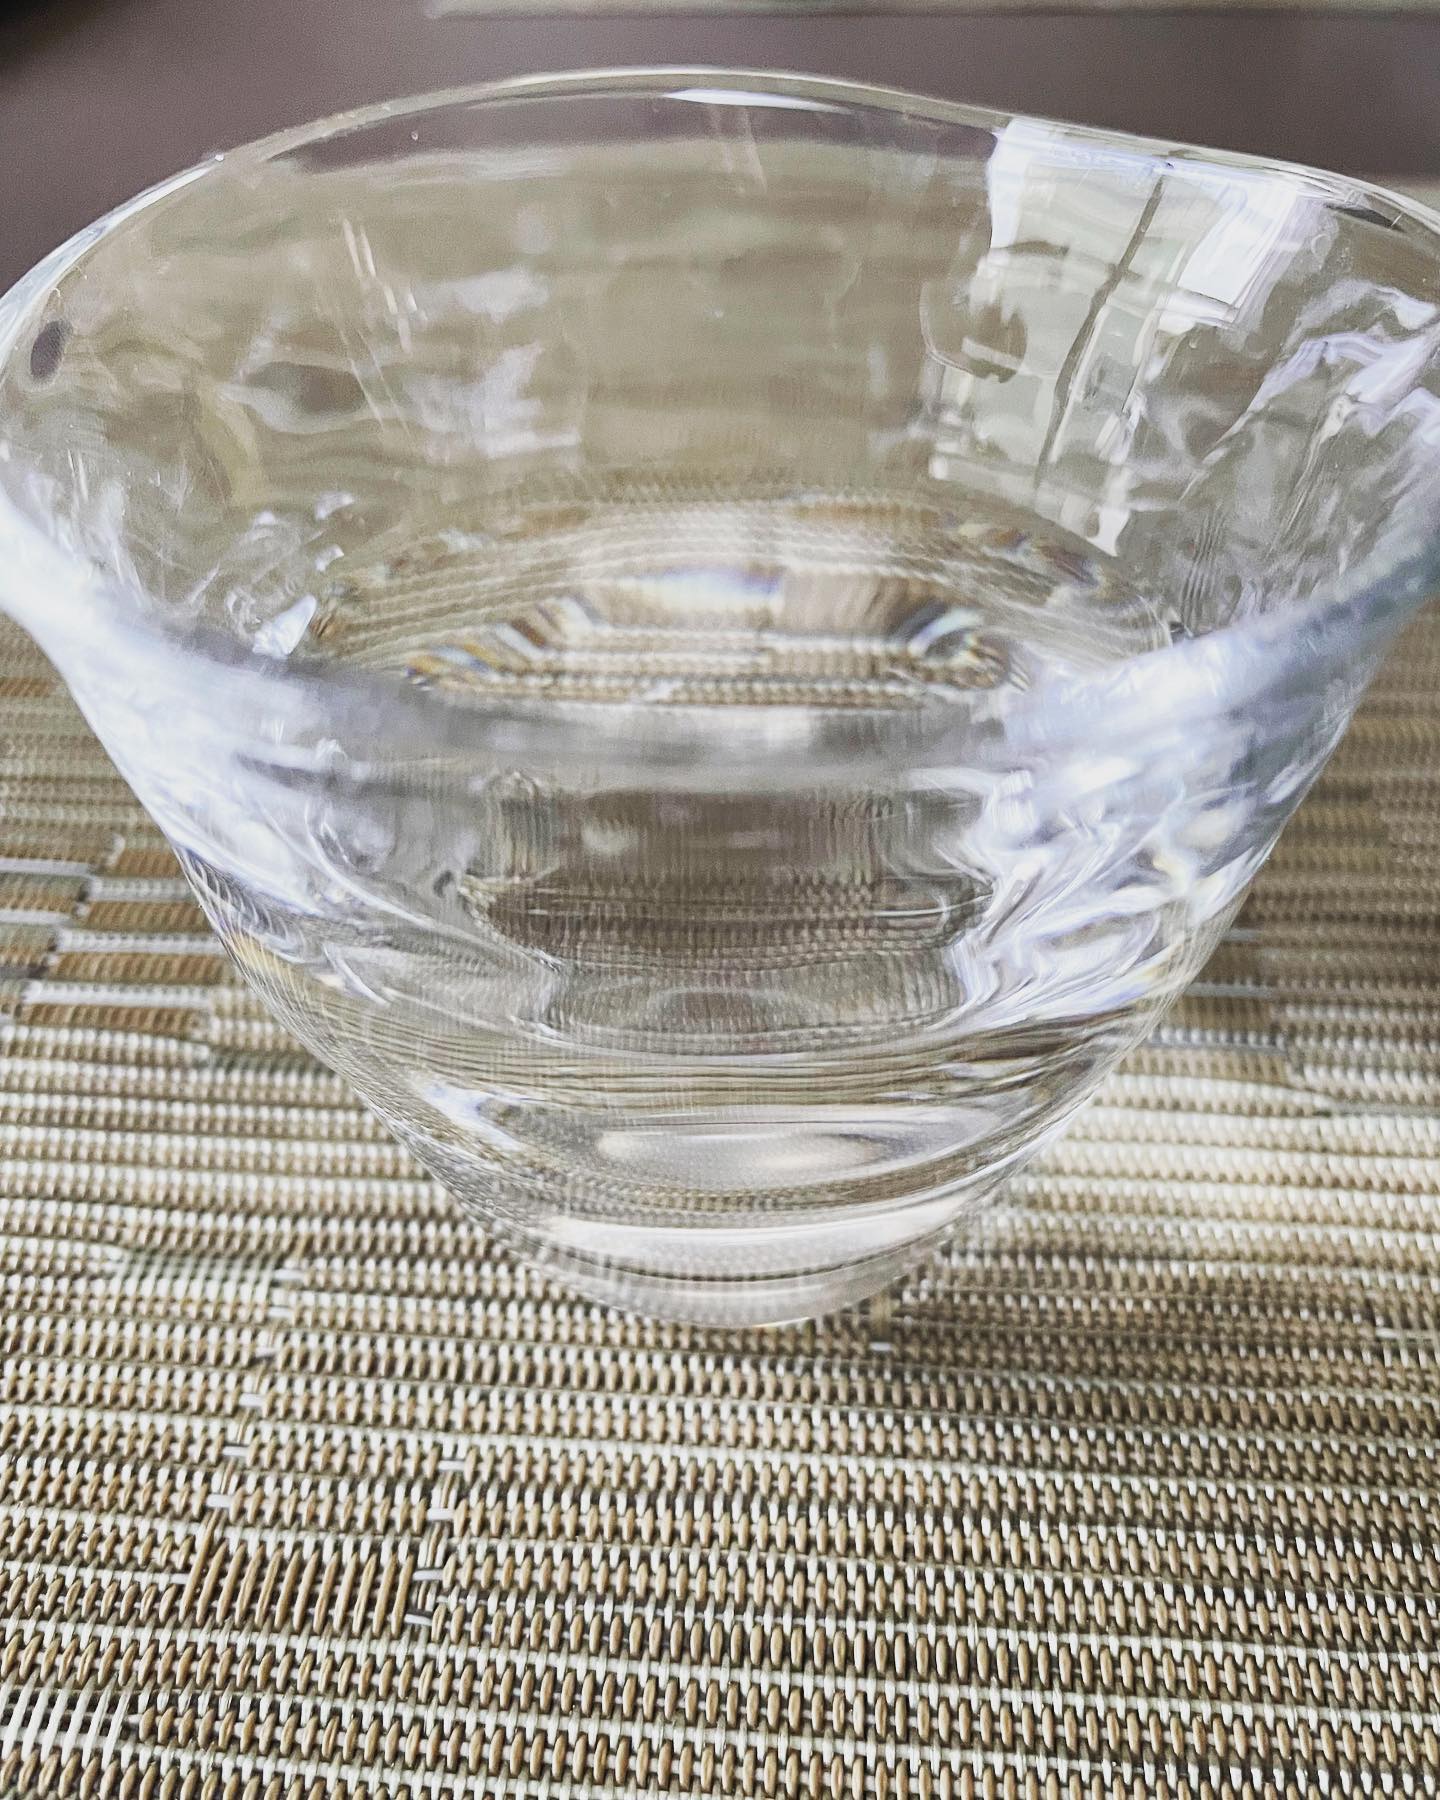 #水の飲み方1日2ﾘｯﾄﾙ喉が渇く前に、ガブ飲みはしない。冷たい水は、血管収縮、関節炎、心拍数低下、肥満の原因にもなります。